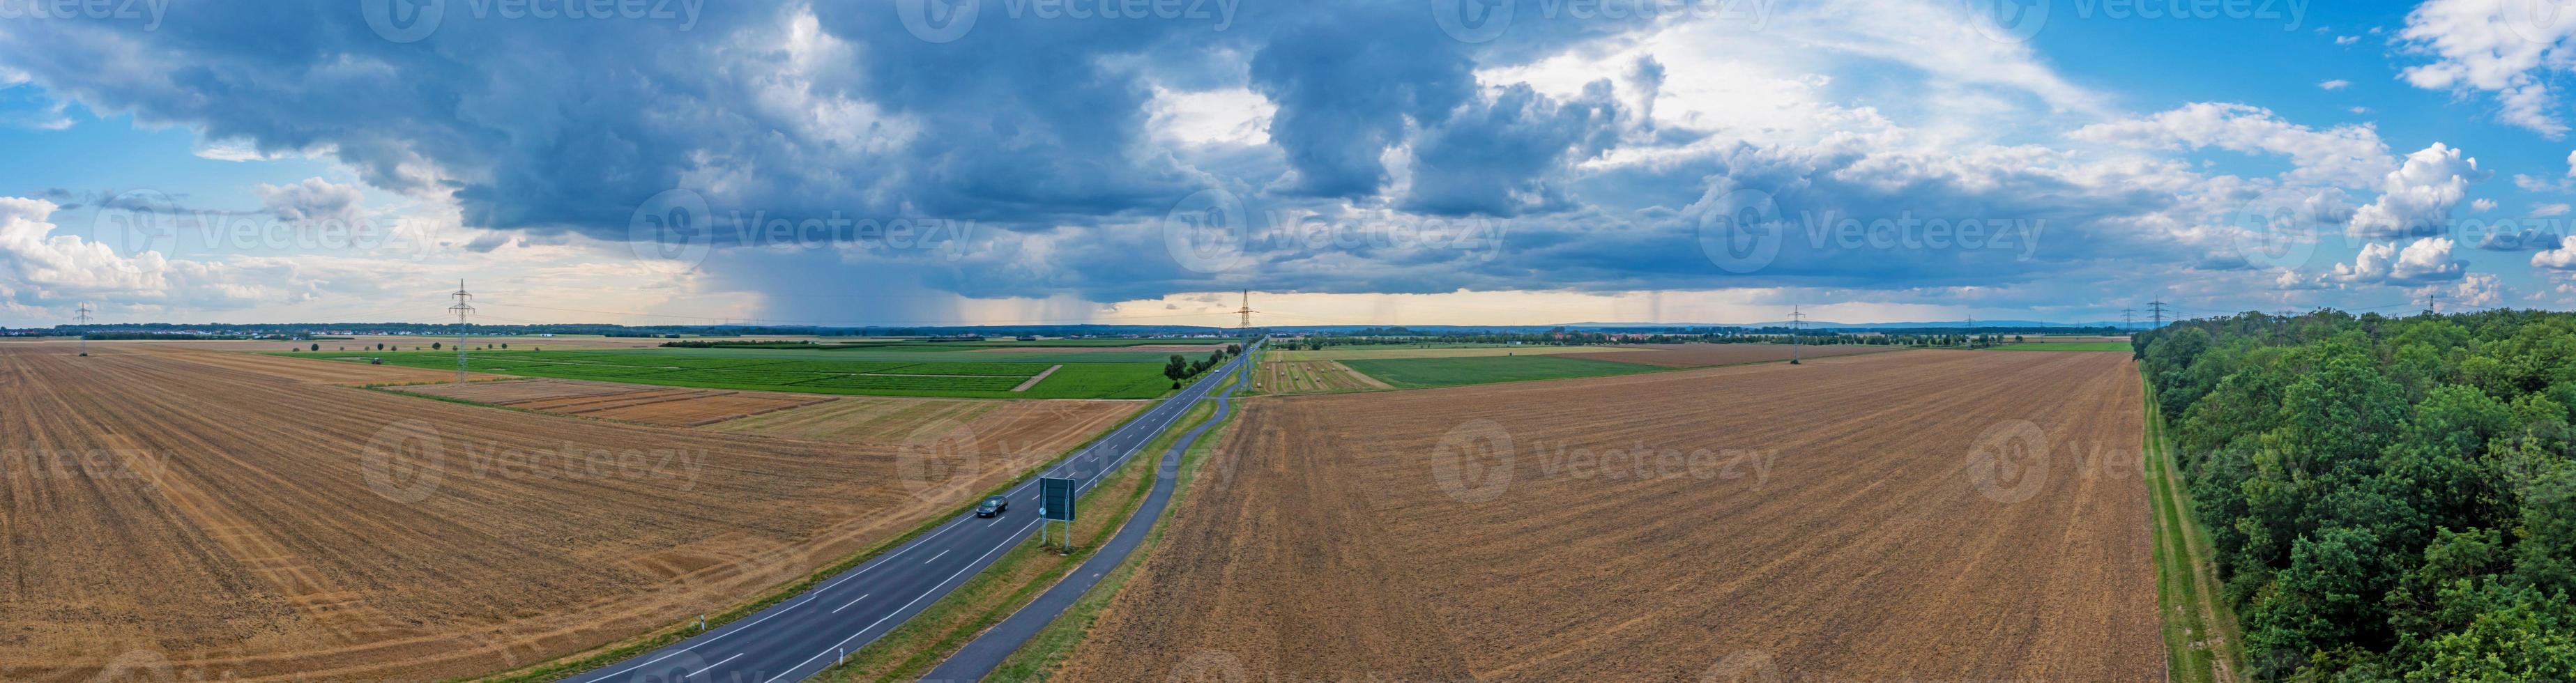 dar panorama van een onweersbui met regen en dramatisch wolk formaties over- Leeheim in de jute rieden regio foto